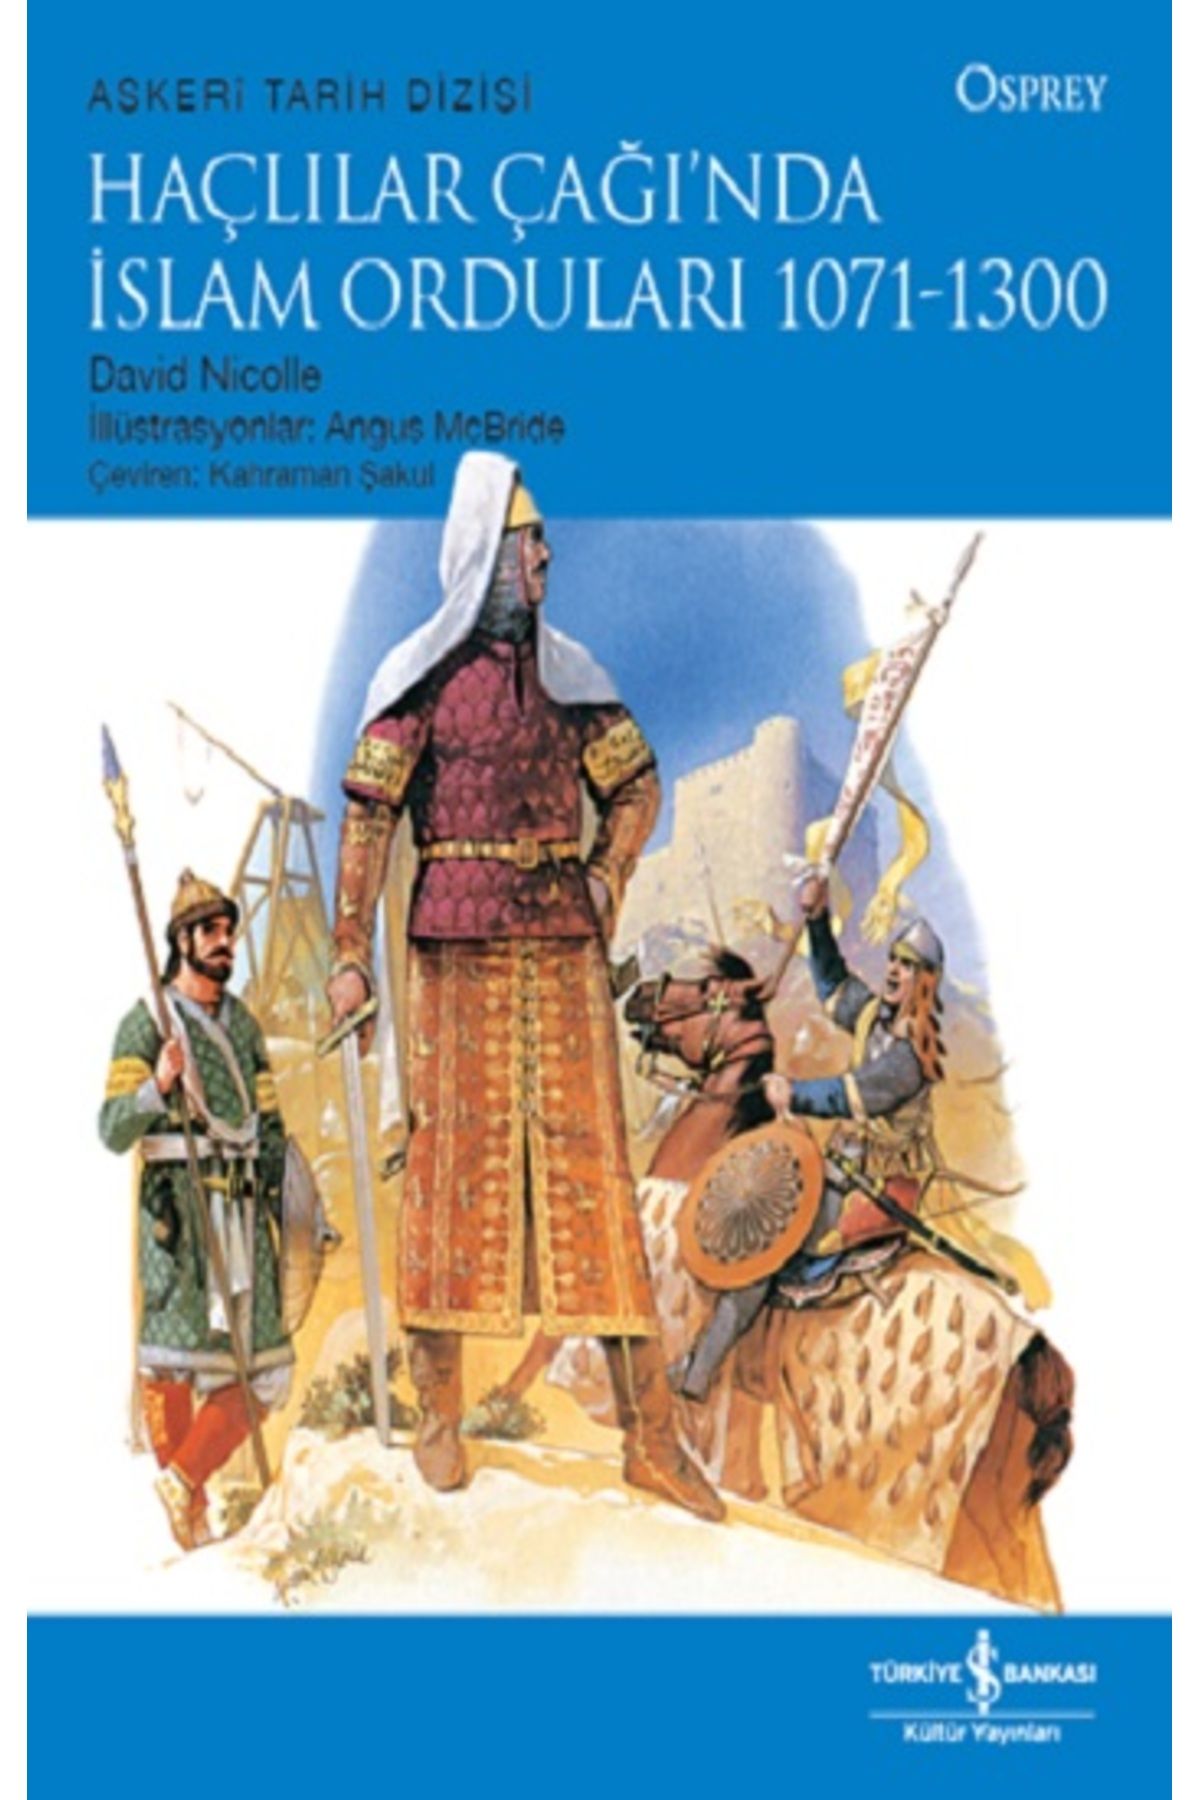 Türkiye İş Bankası Kültür Yayınları Haçlılar Çağı’nda Islam Orduları 1071-1300